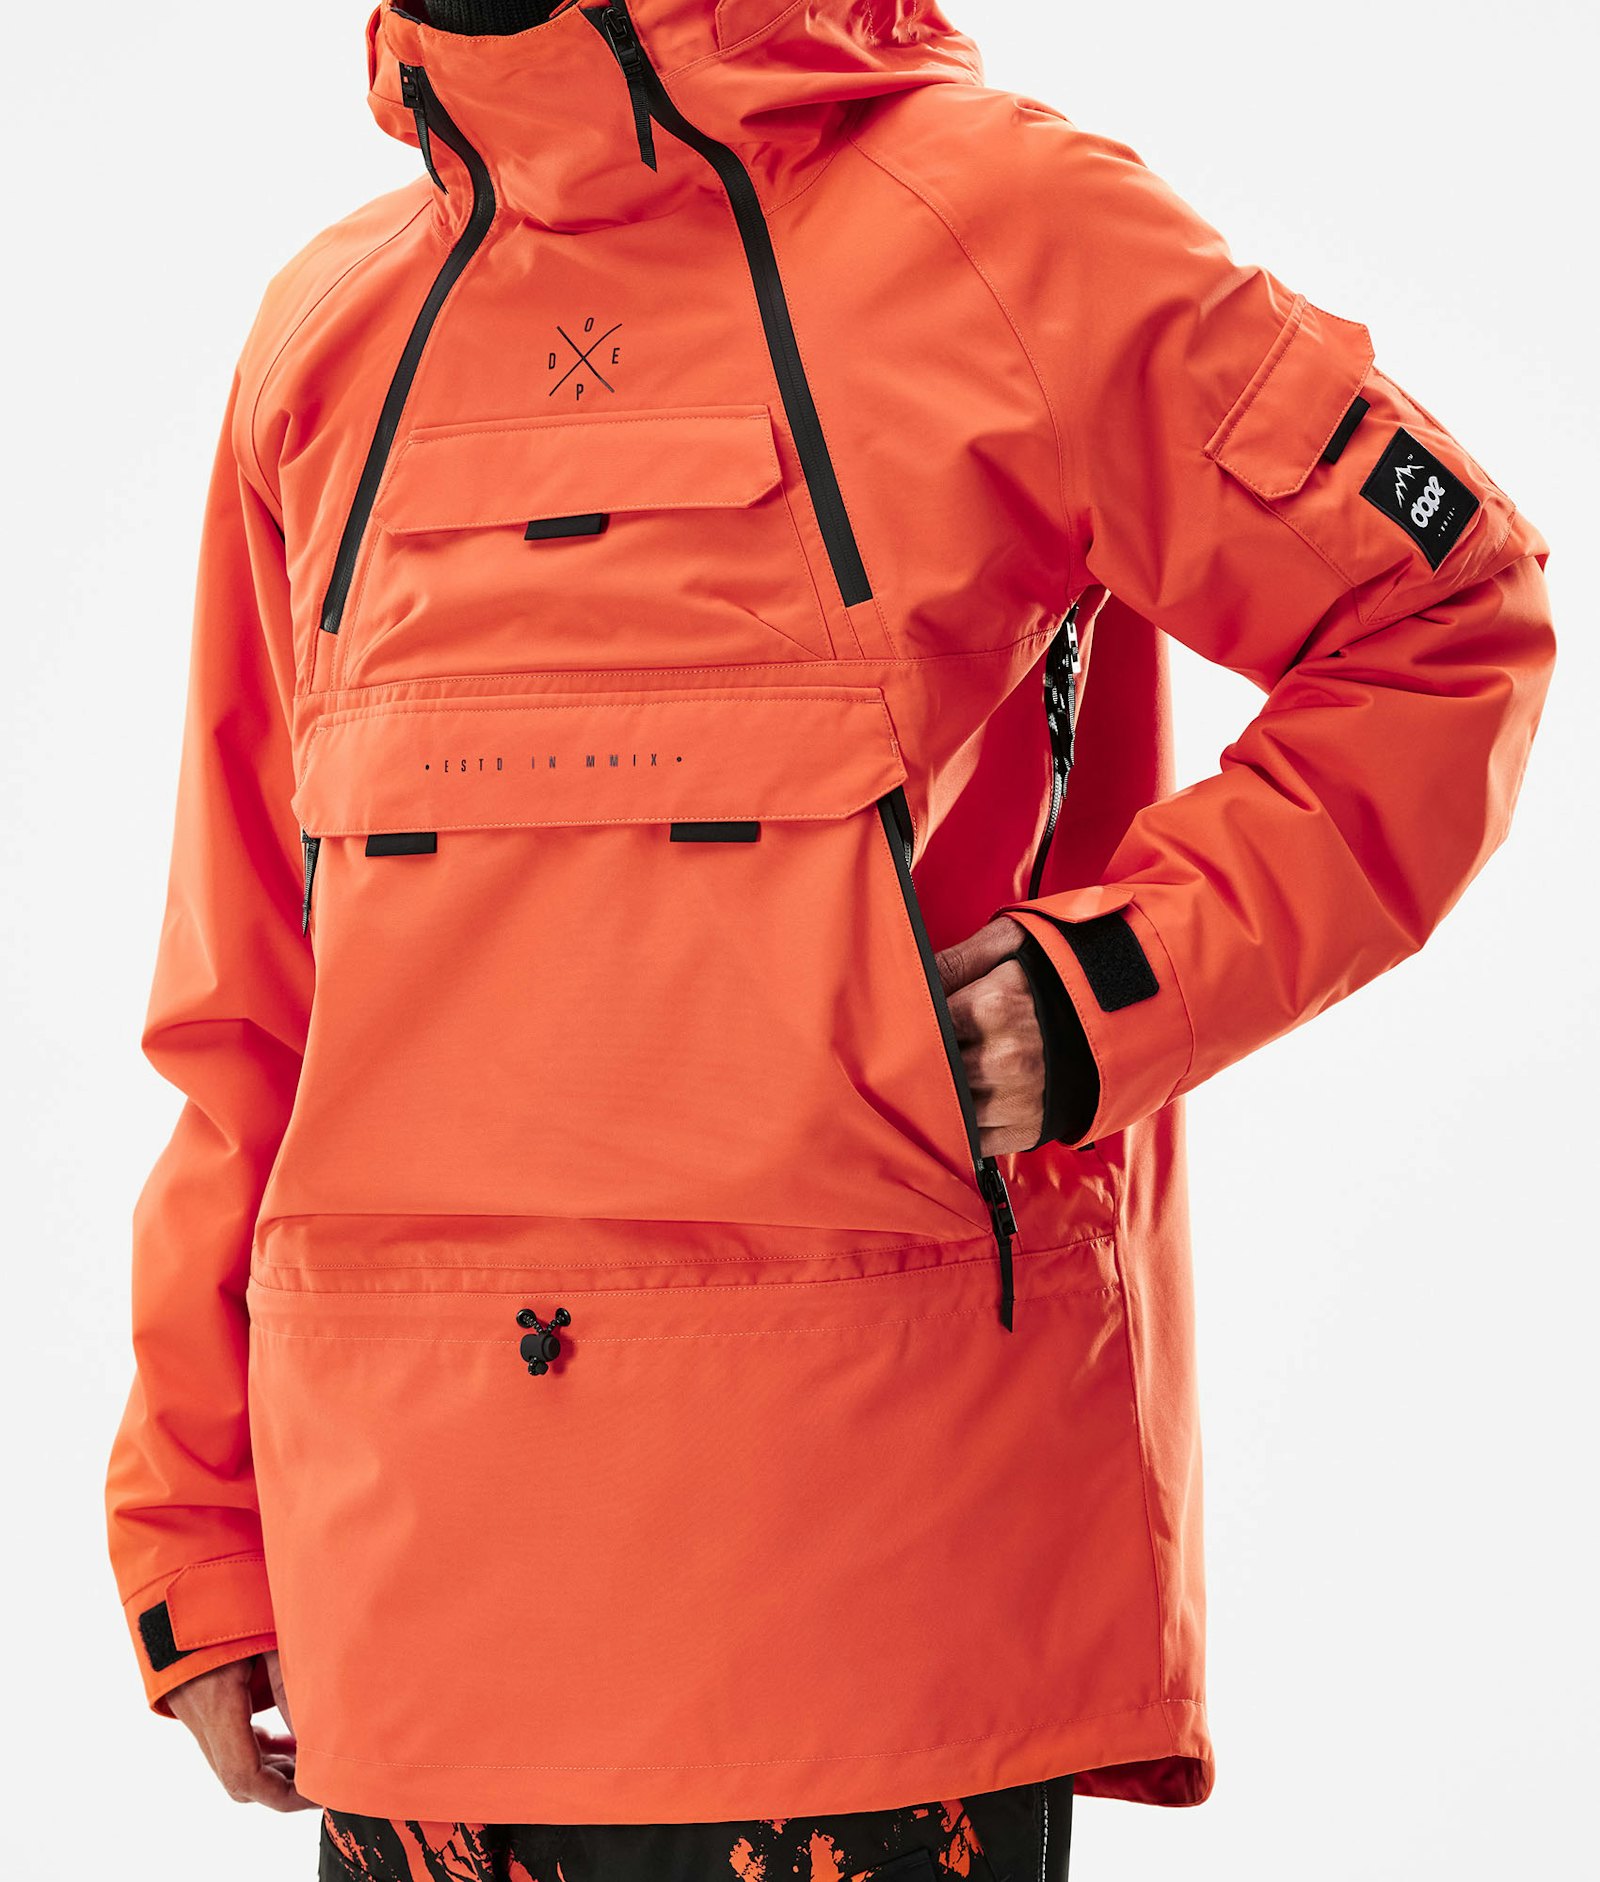 Dope Akin 2021 Snowboardjacke Herren Orange